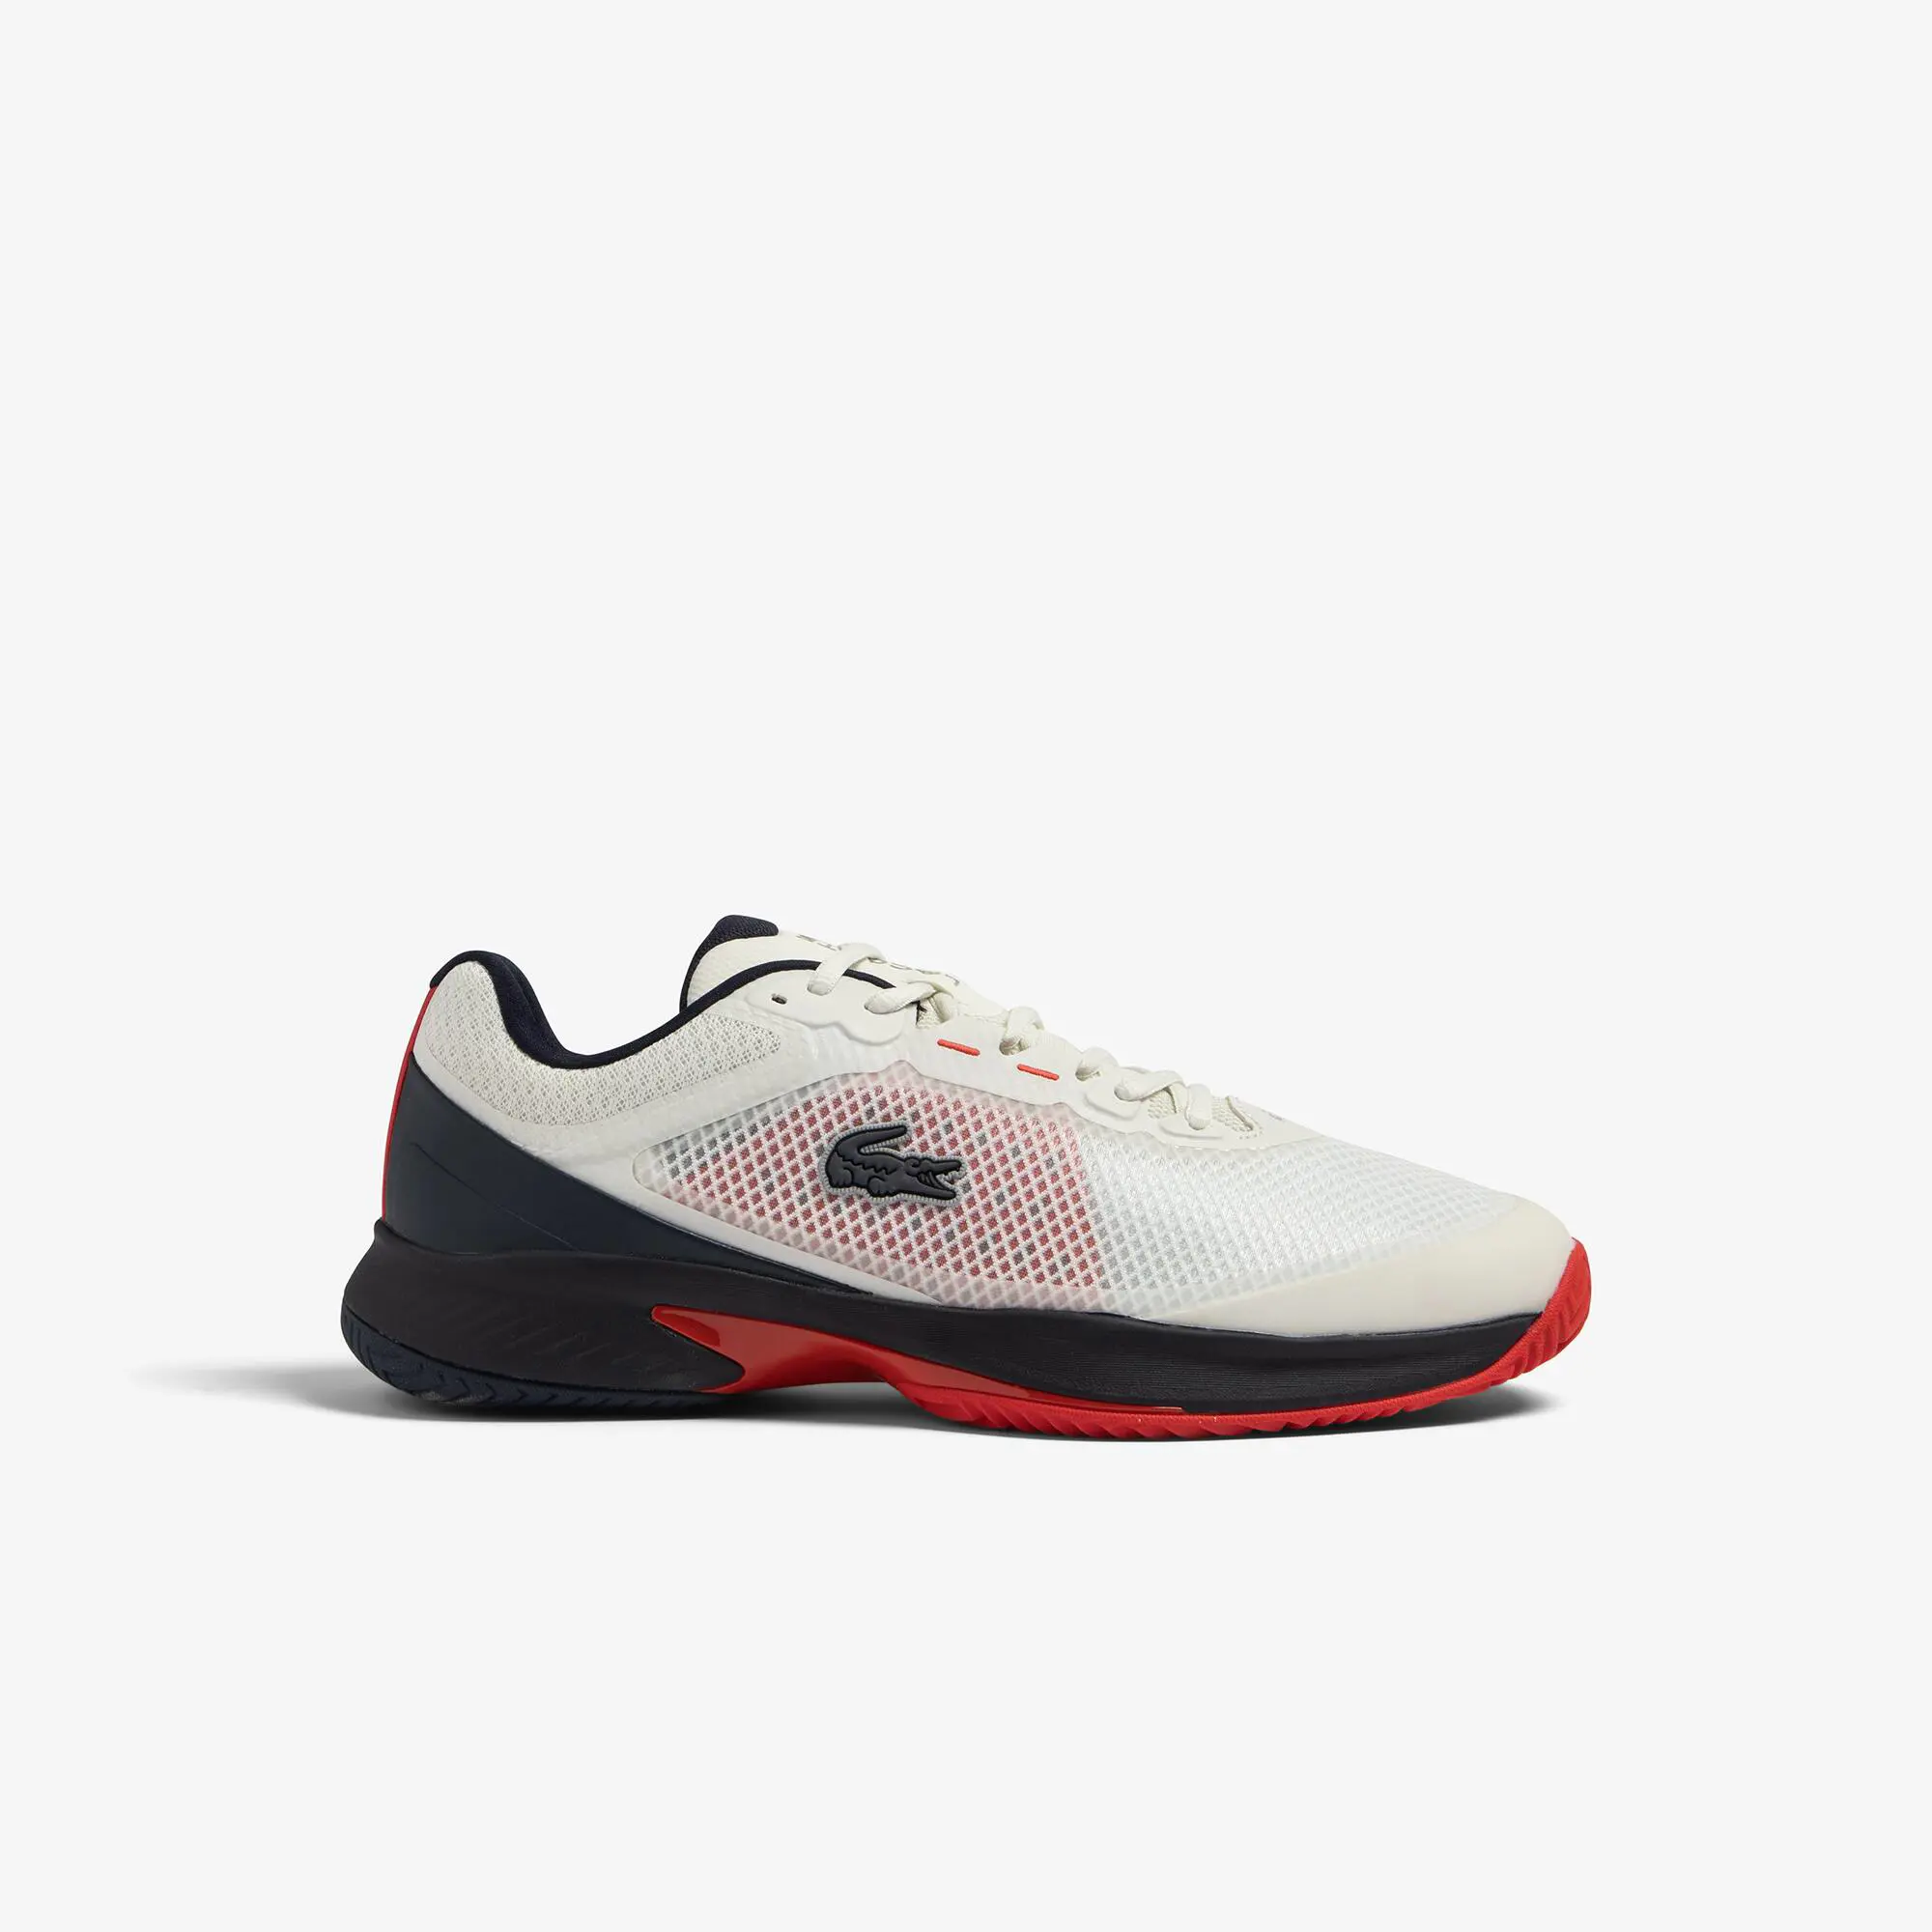 Lacoste Men's Lacoste Tech Point Textile Tennis Shoes. 1